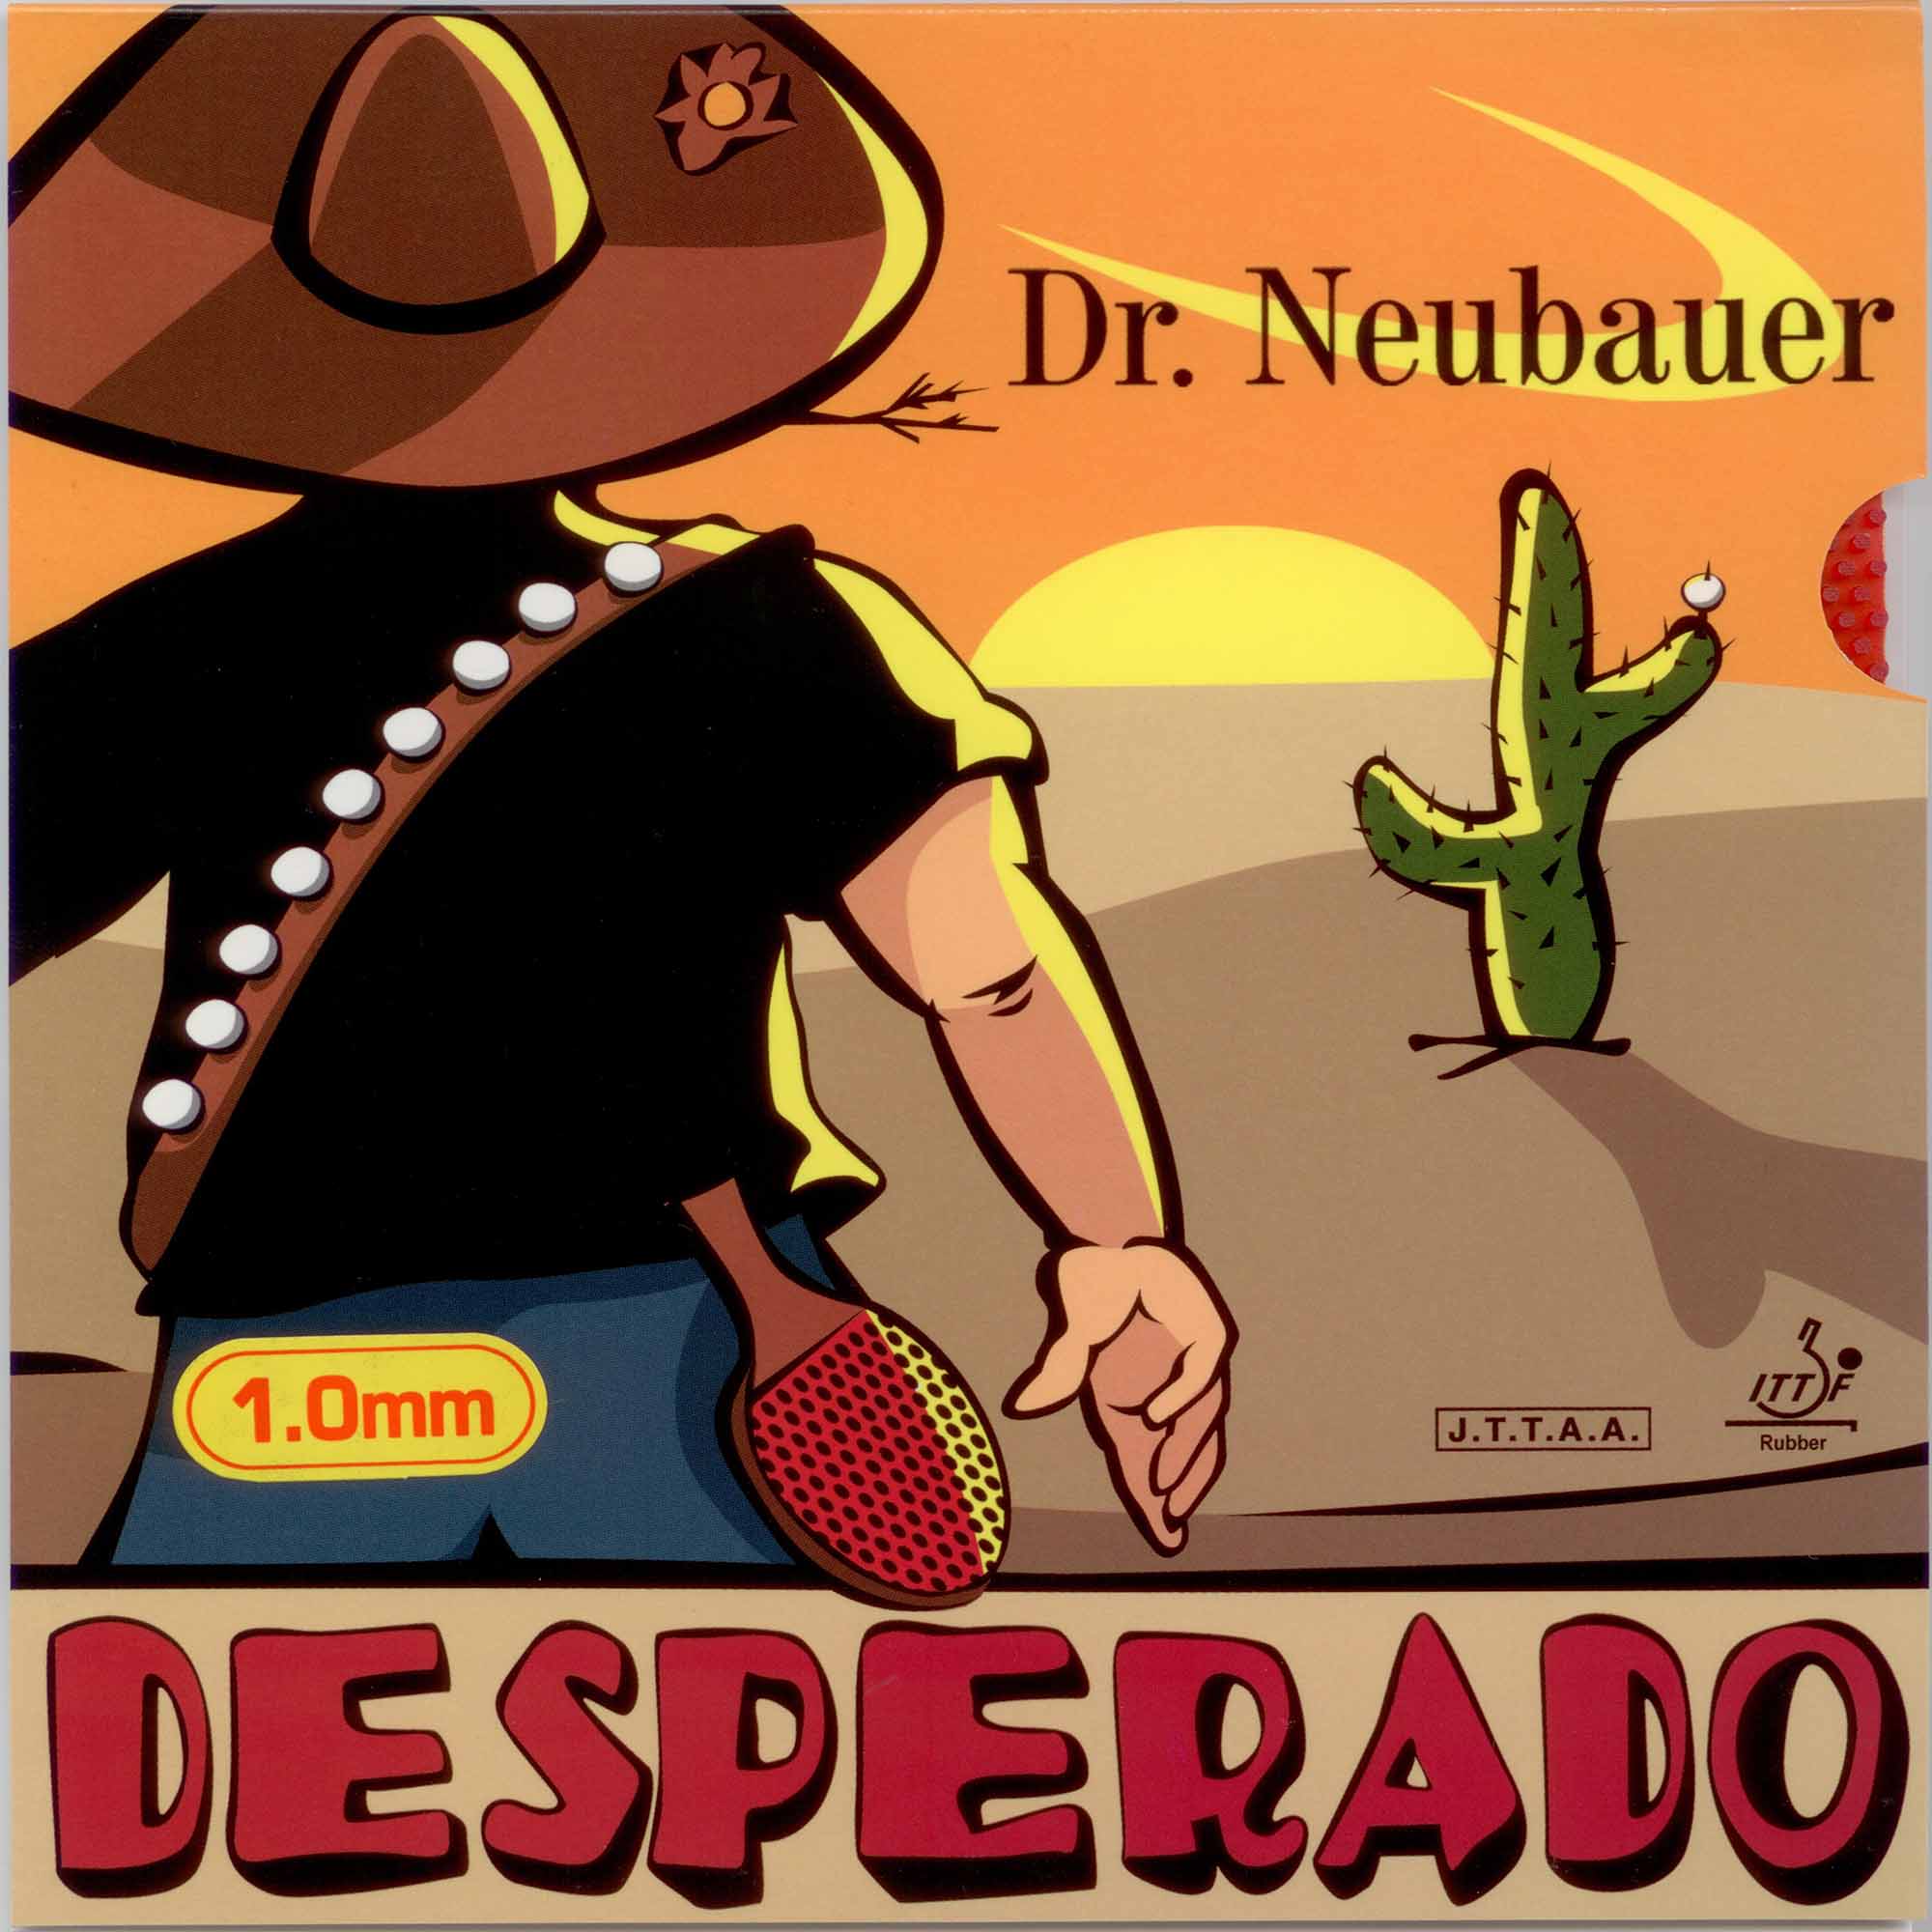 Dr. Neubauer Rubber Desperado red OX